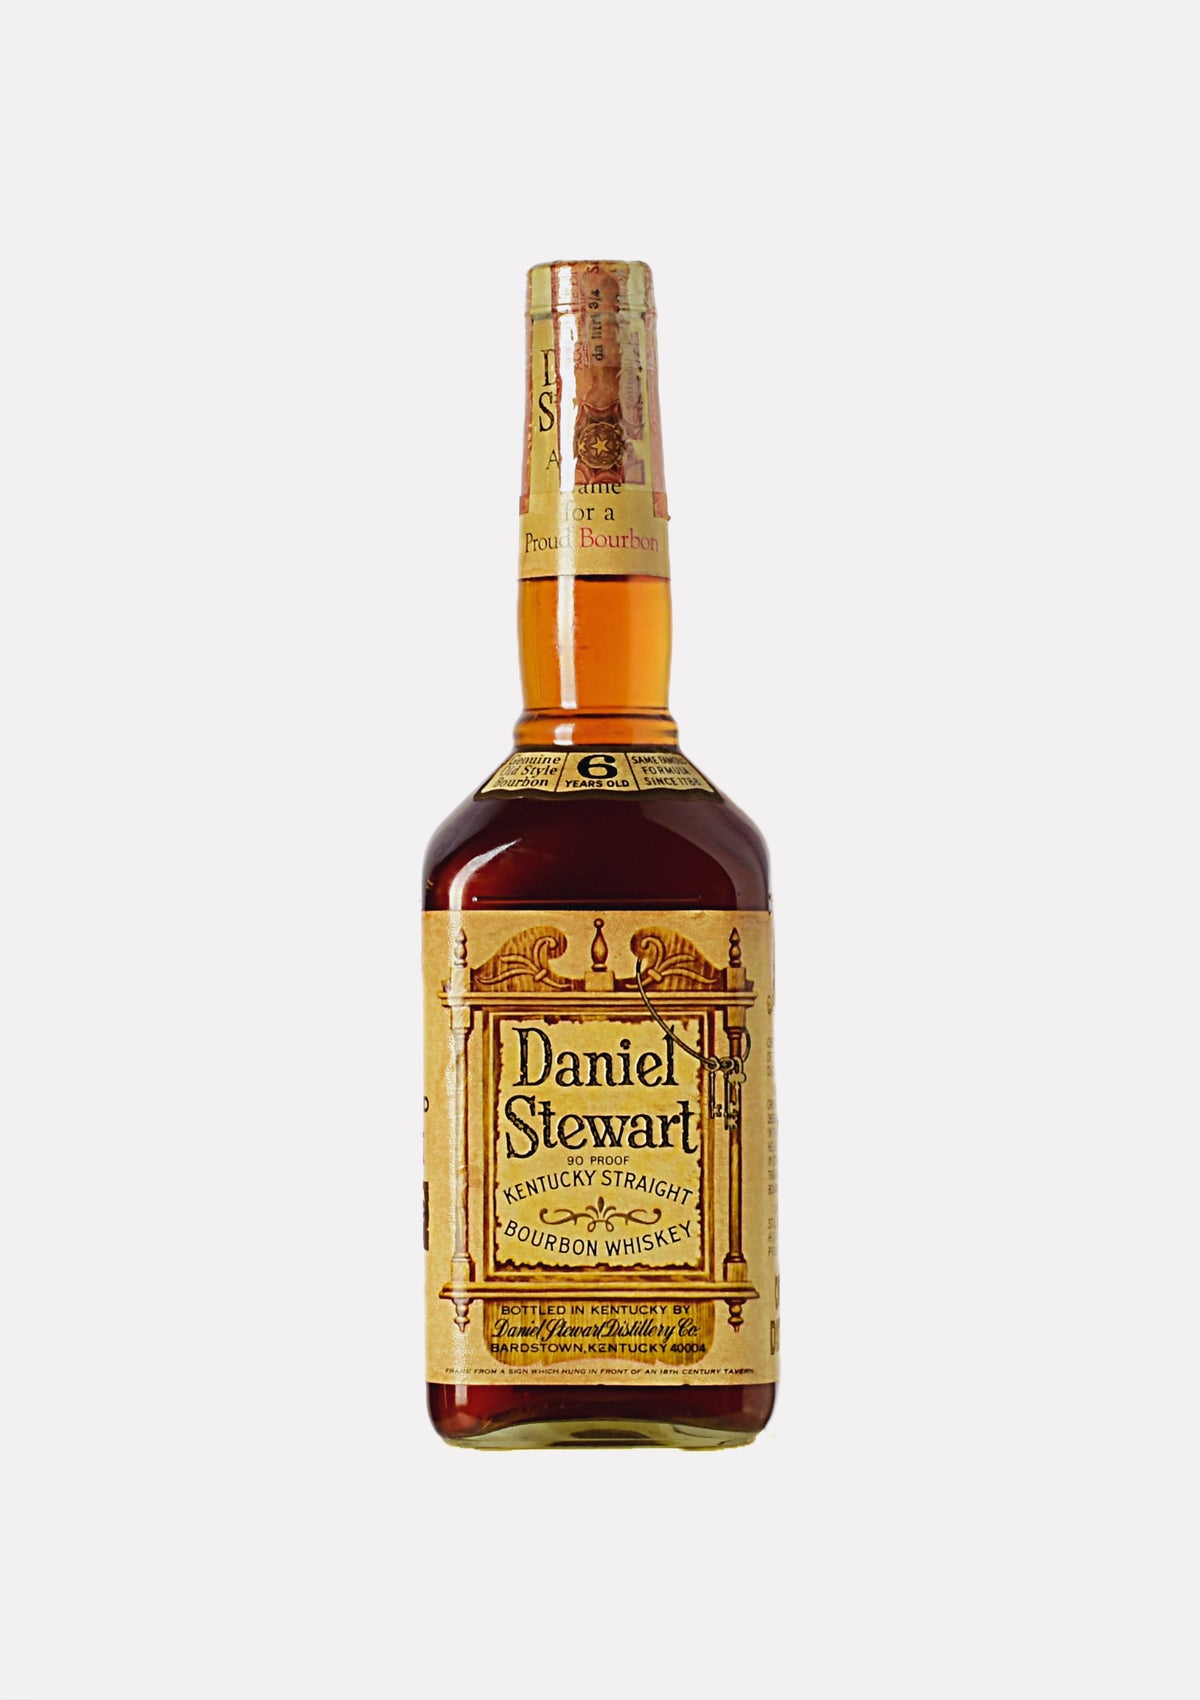 Daniel Stewart Kentucky Straight Bourbon Whiskey 6 Jahre